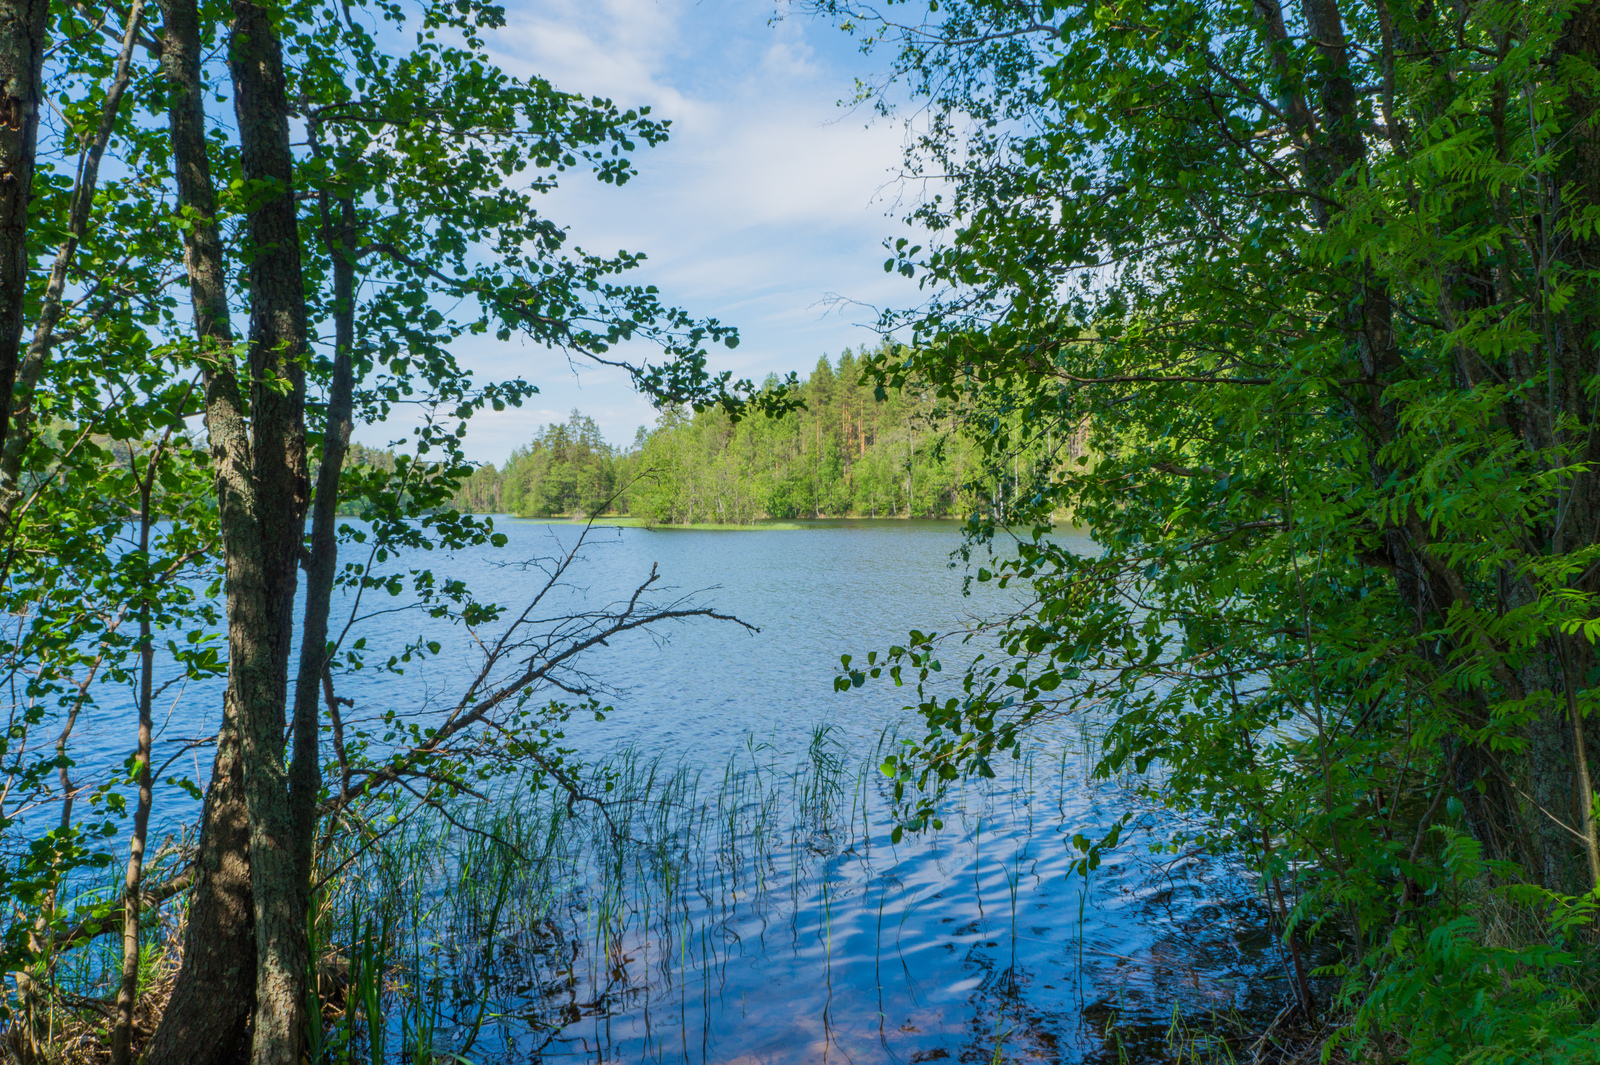 Lehtipuut reunustavat kesäistä järvimaisemaa. Rantavedessä on vesikasveja ja taivaalla poutapilviä.